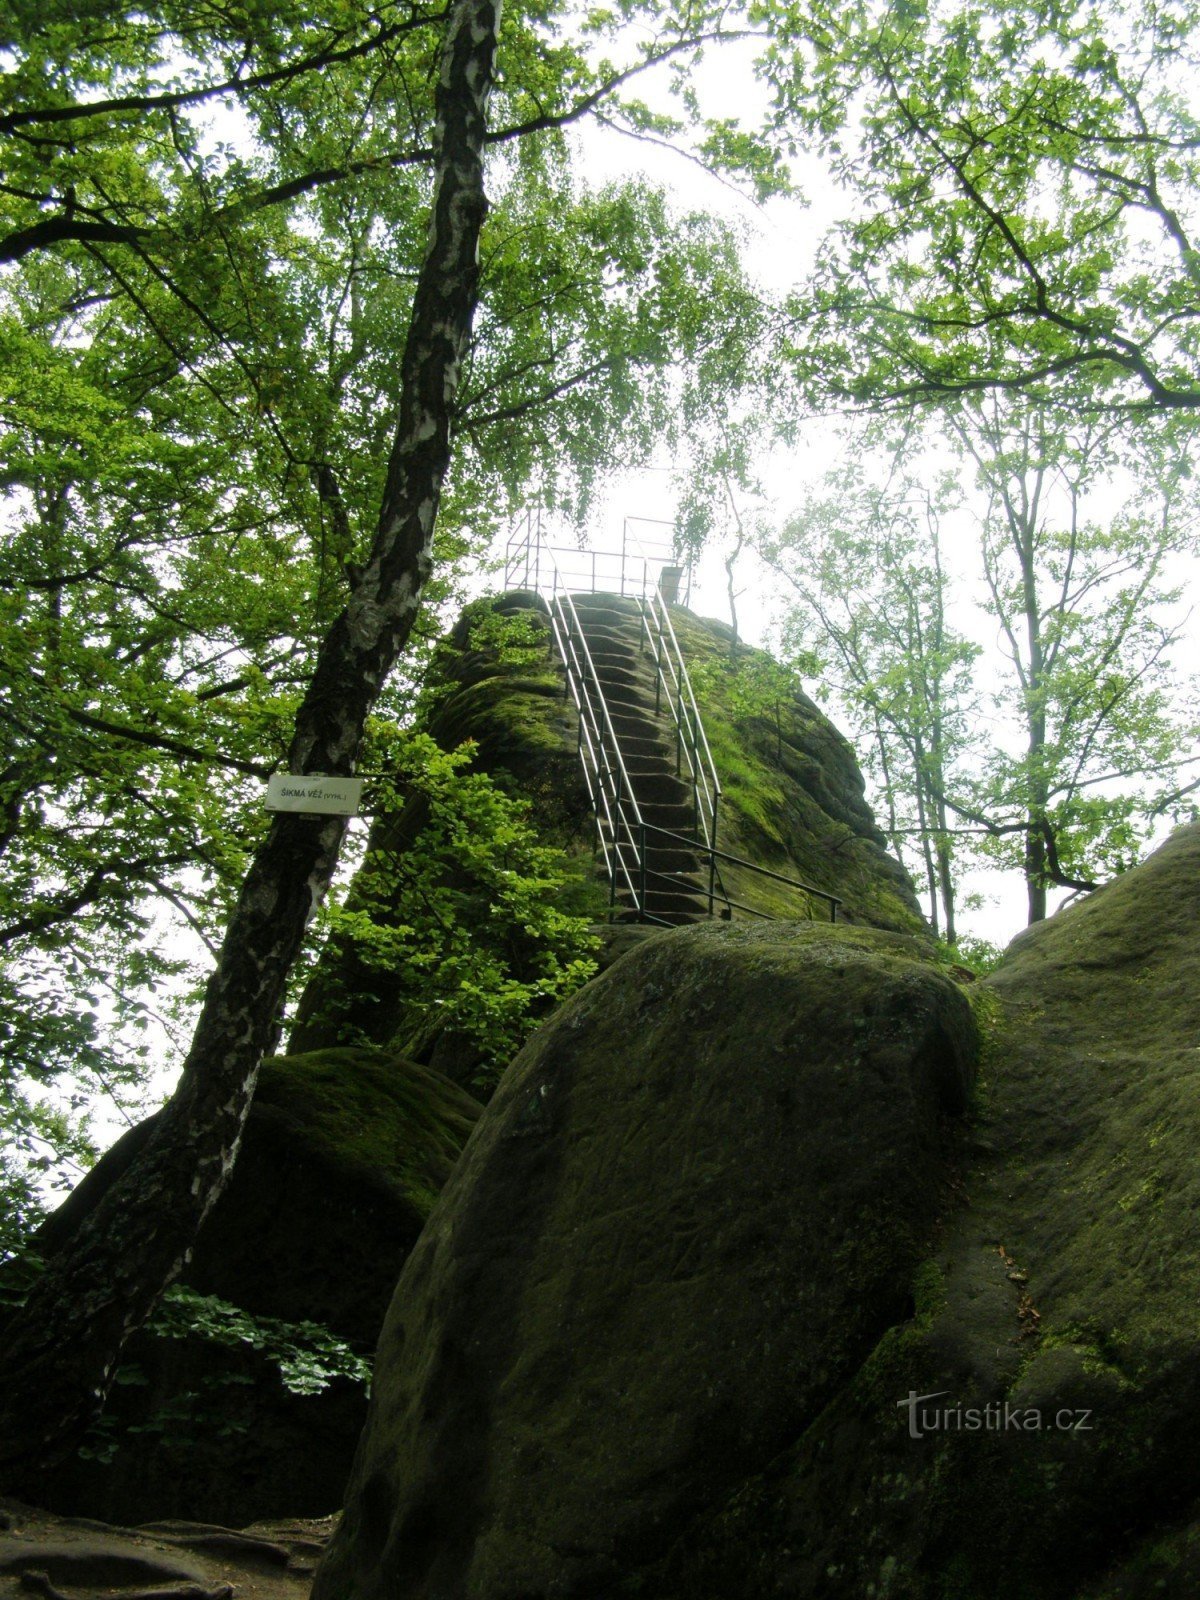 Tháp nghiêng - góc nhìn của Vítka